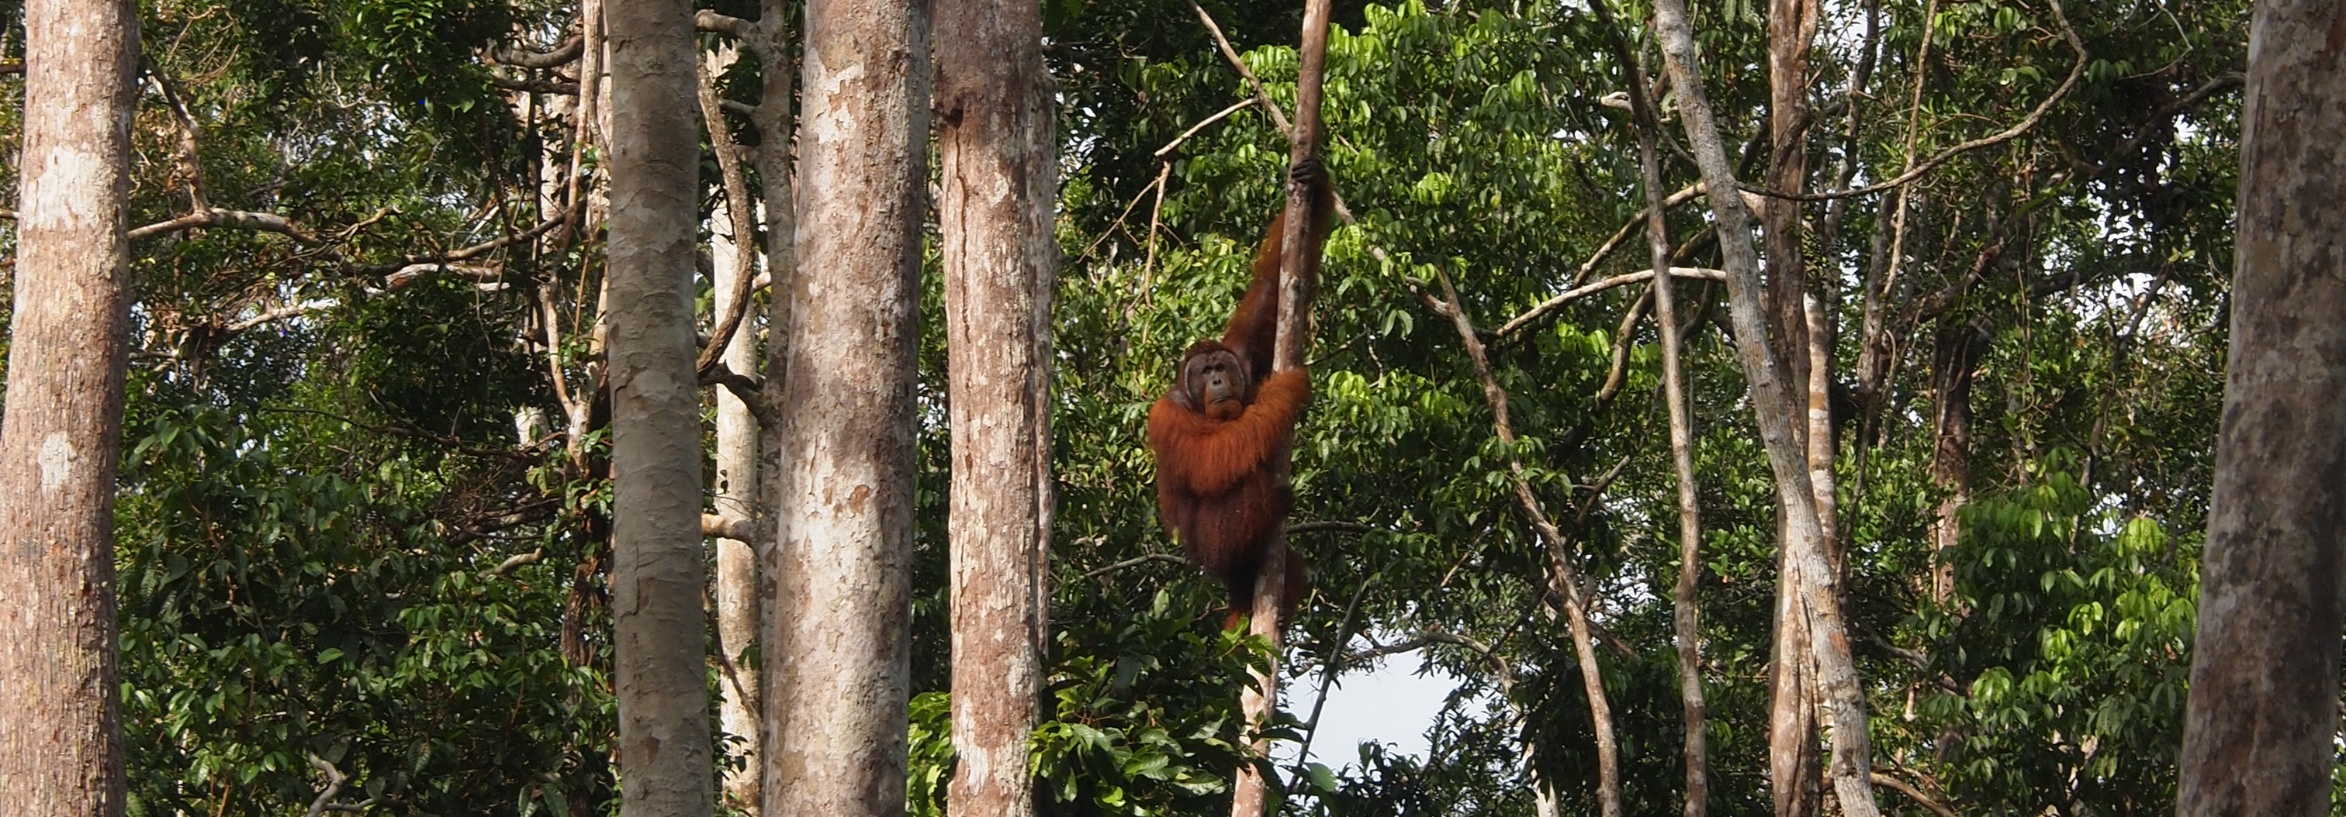 Orangutanmännchen